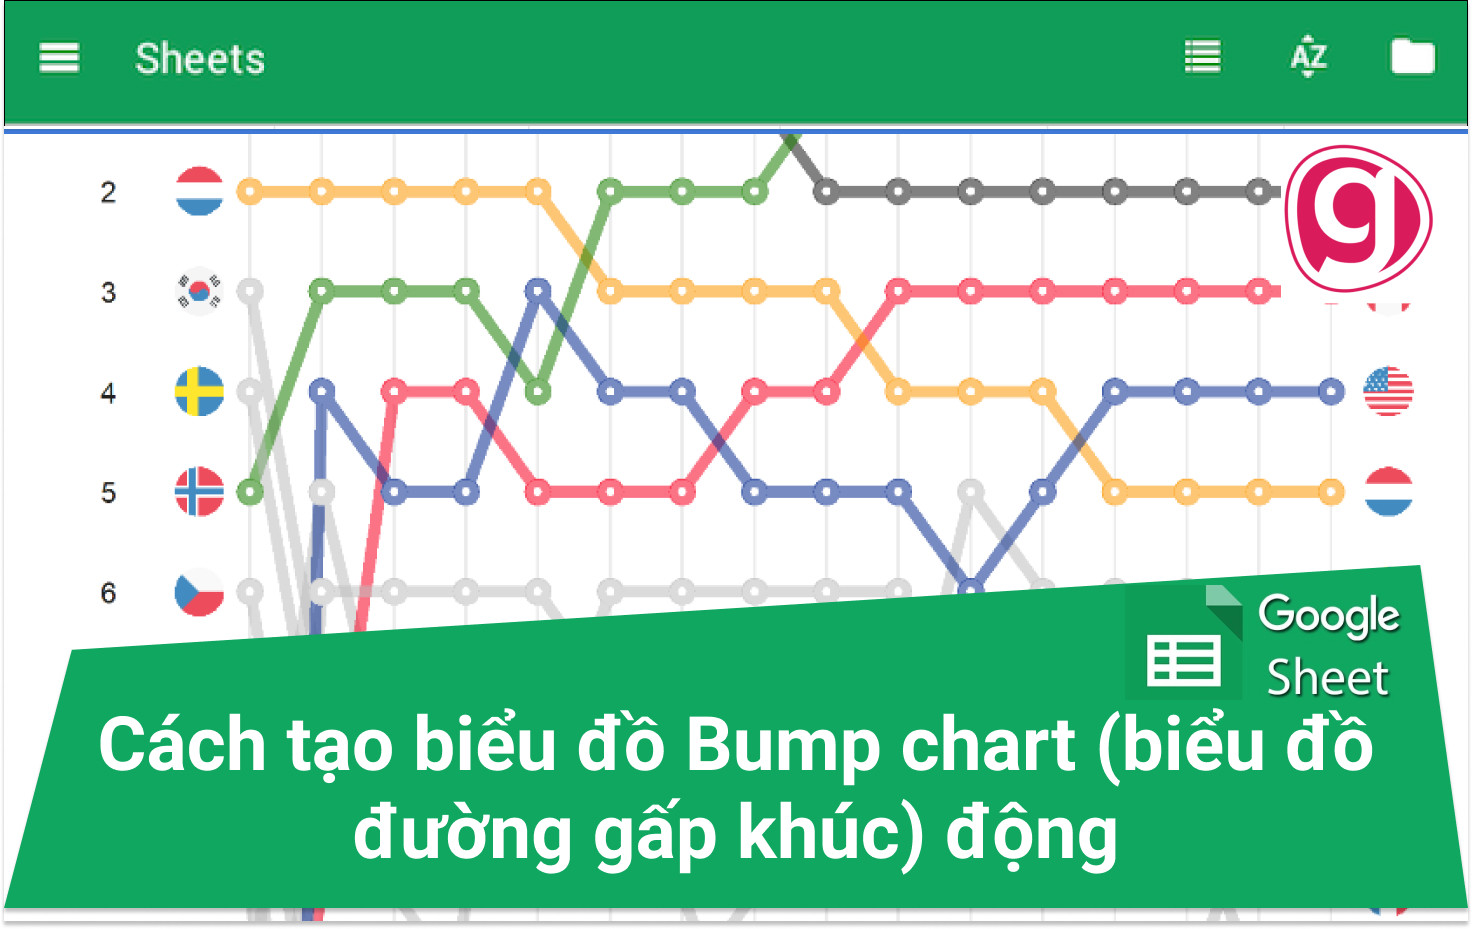 Cách tạo biểu đồ Bump chart (đường gấp khúc) động trong Excel